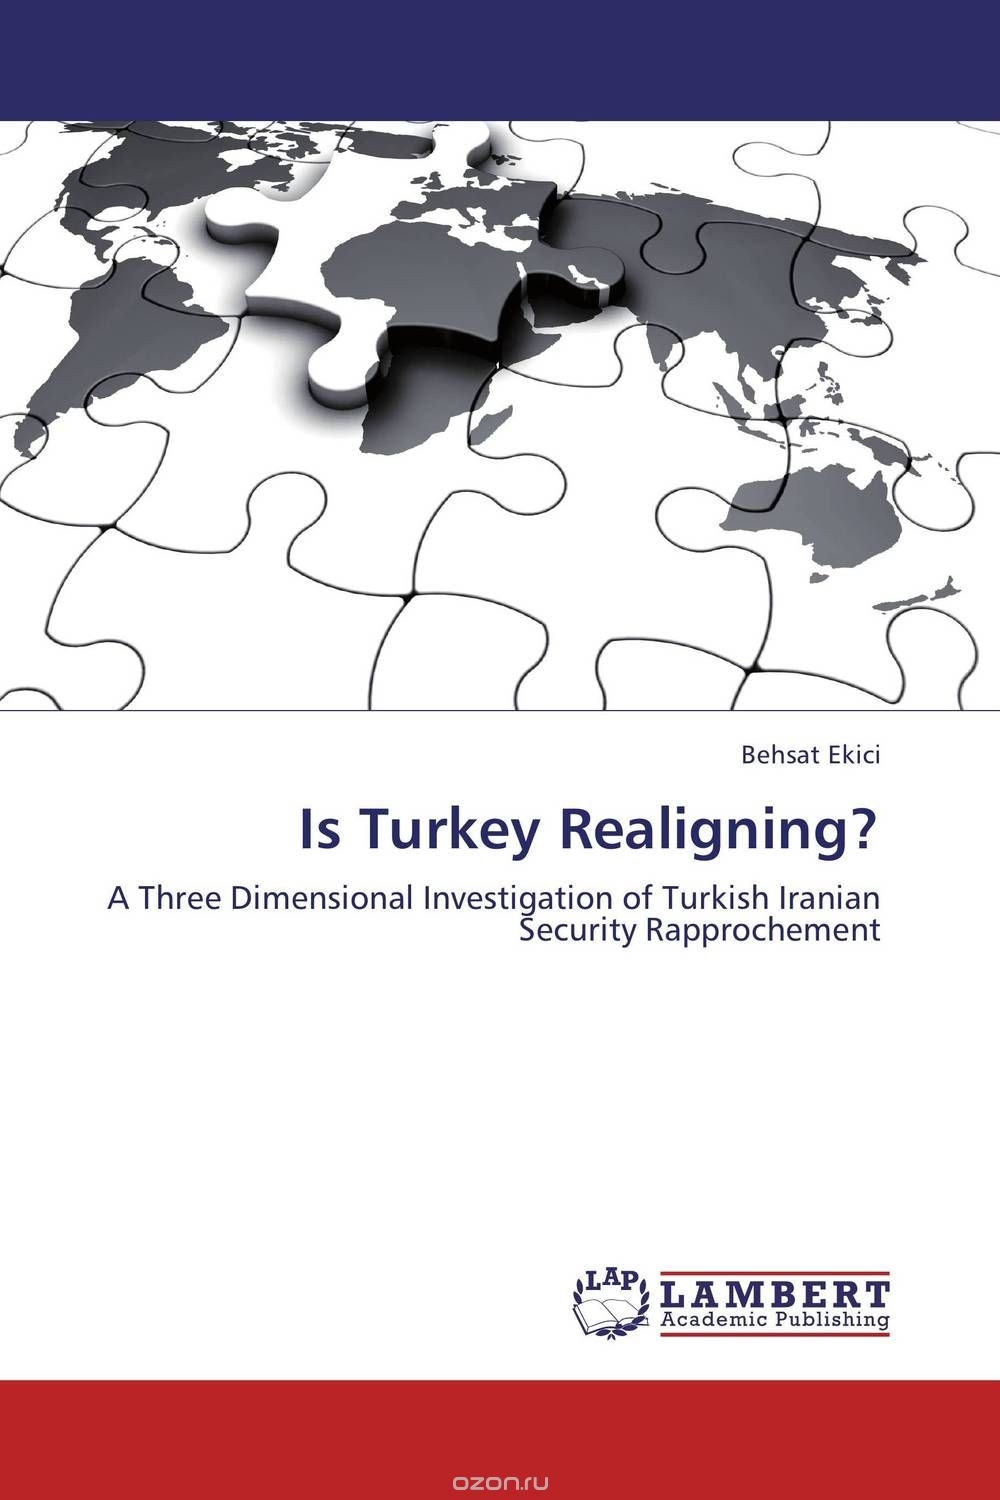 Скачать книгу "Is Turkey Realigning?"